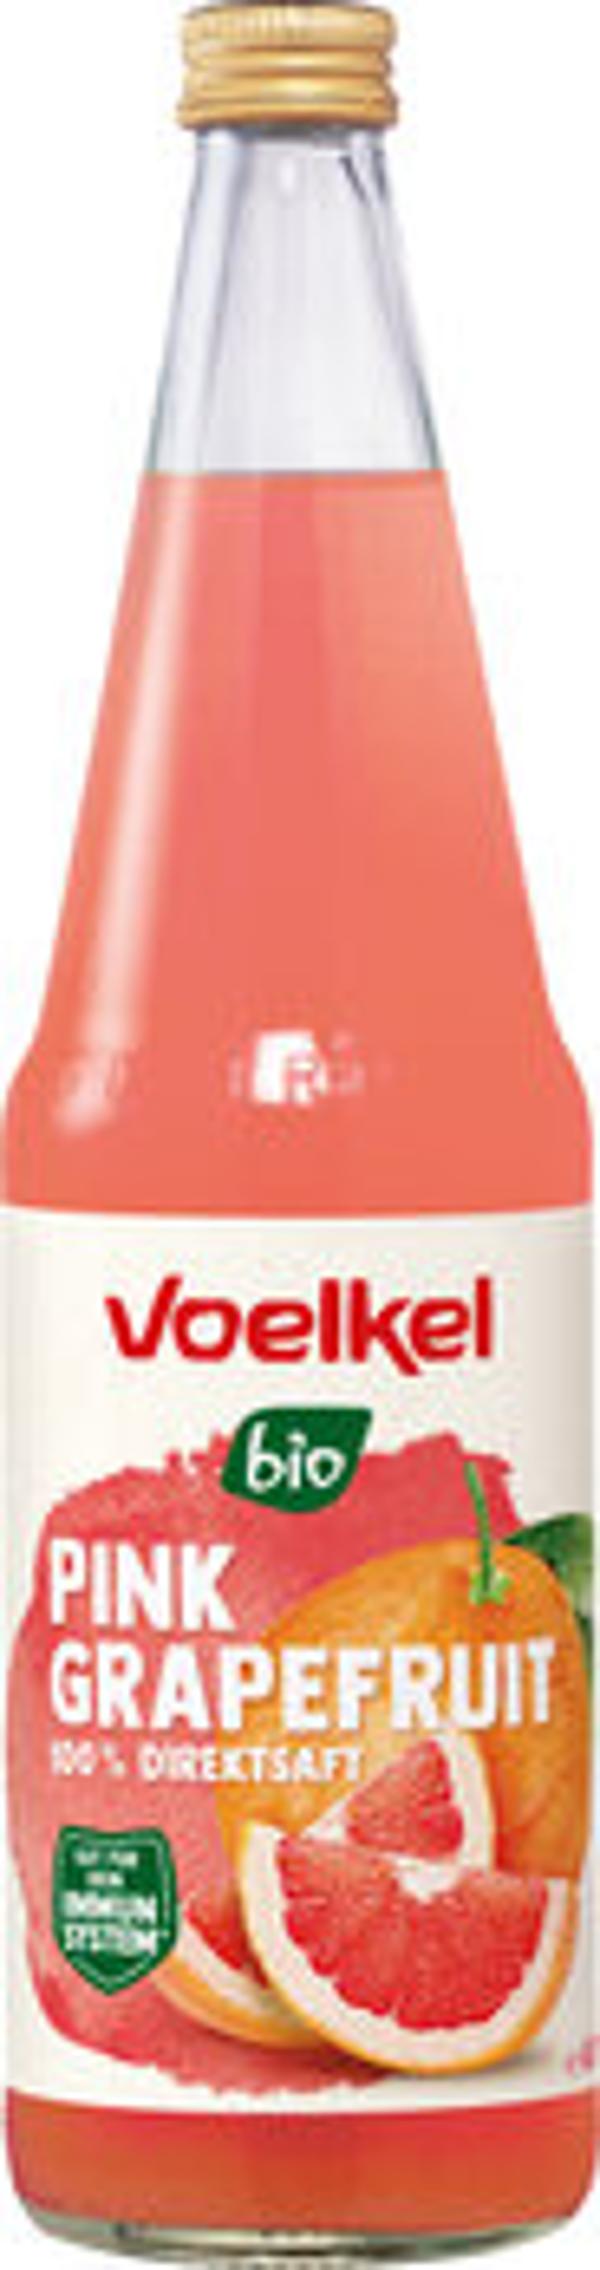 Produktfoto zu Voelkel Pink Grapefruit  0,7l